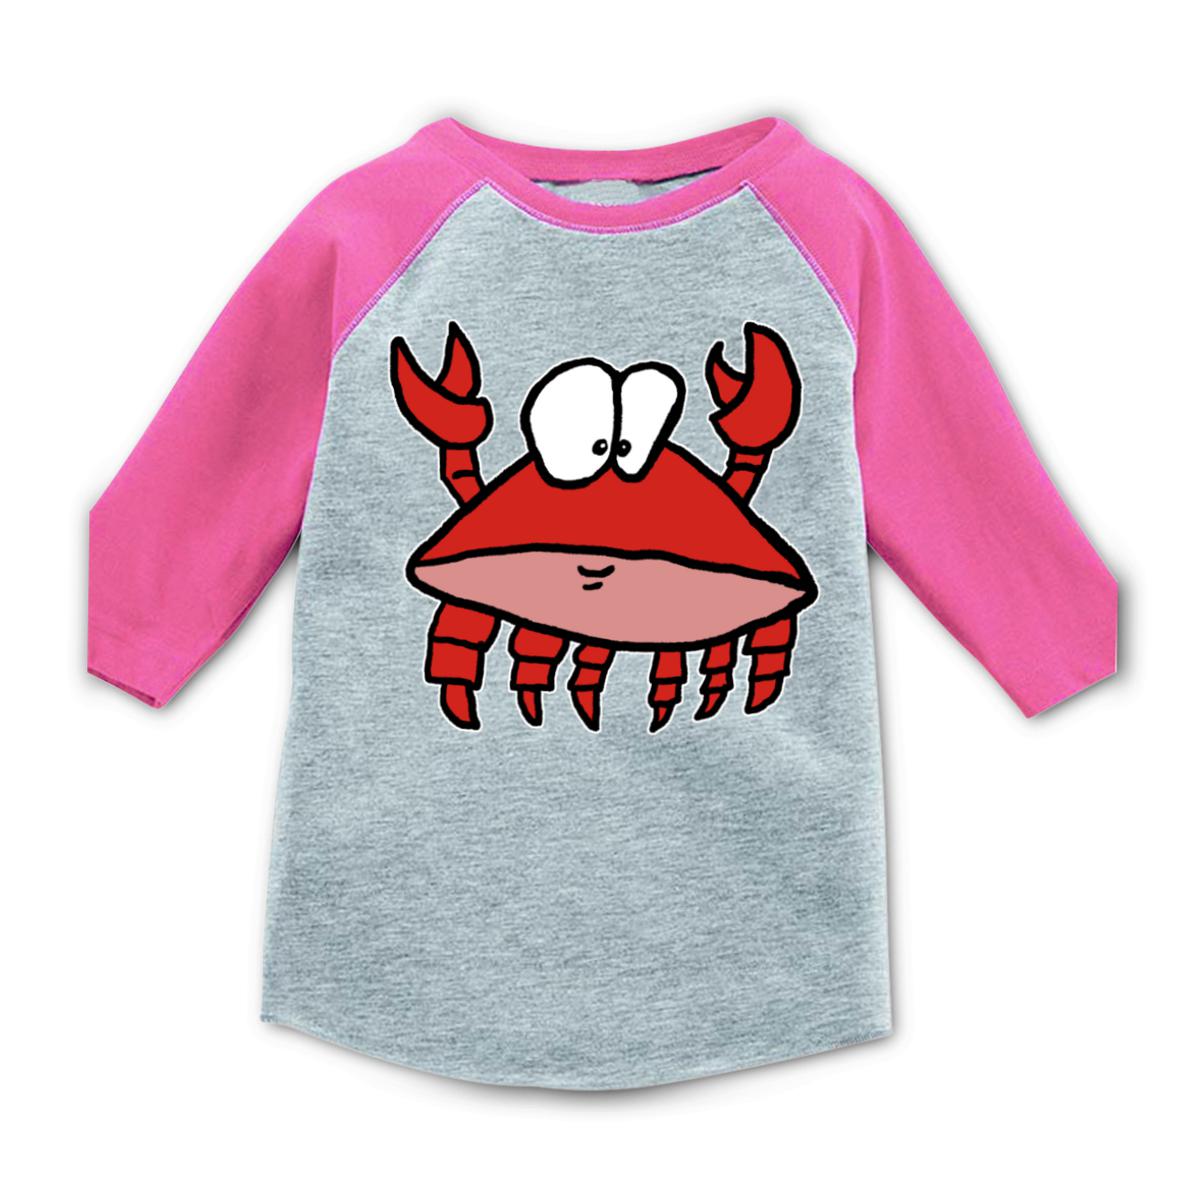 Crab 2.0 Toddler Raglan Tee 56T heather-pink